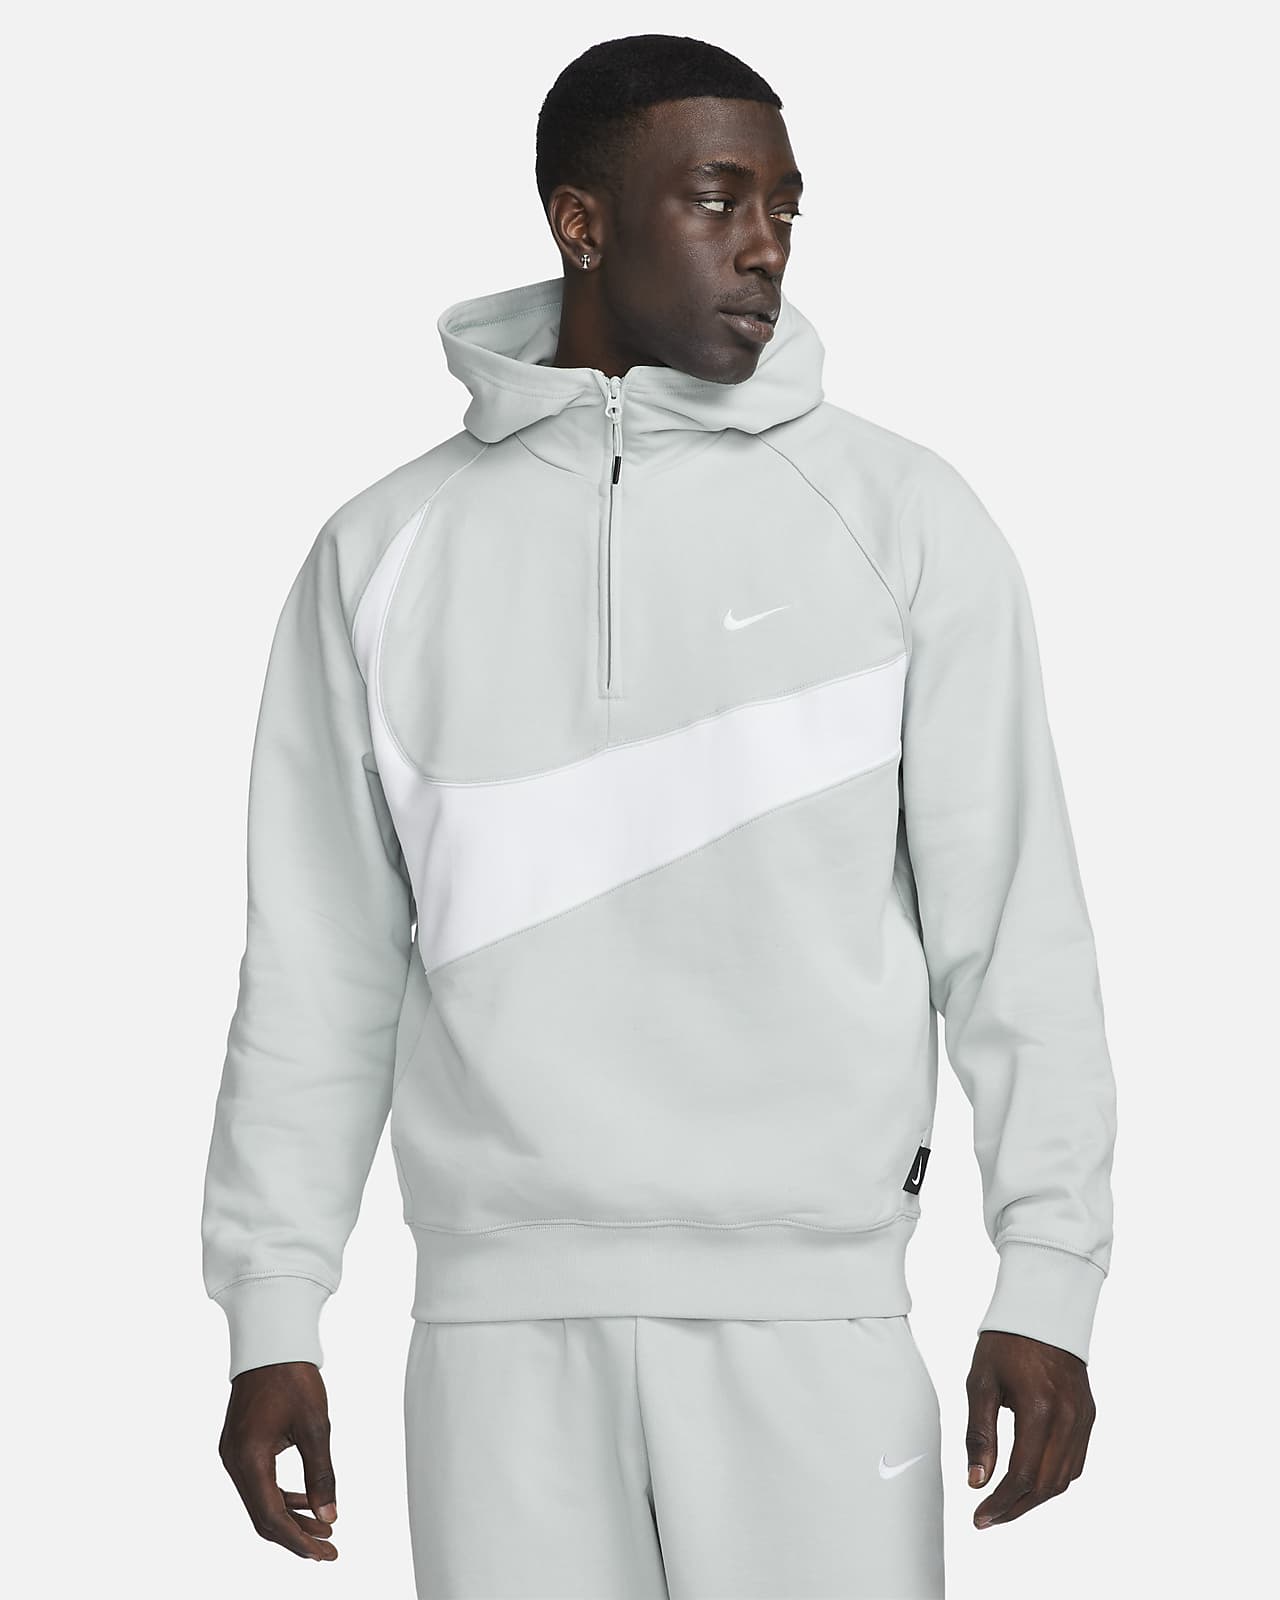 Sudadera con gorro de Fleece con cierre para hombre Nike Swoosh. Nike.com